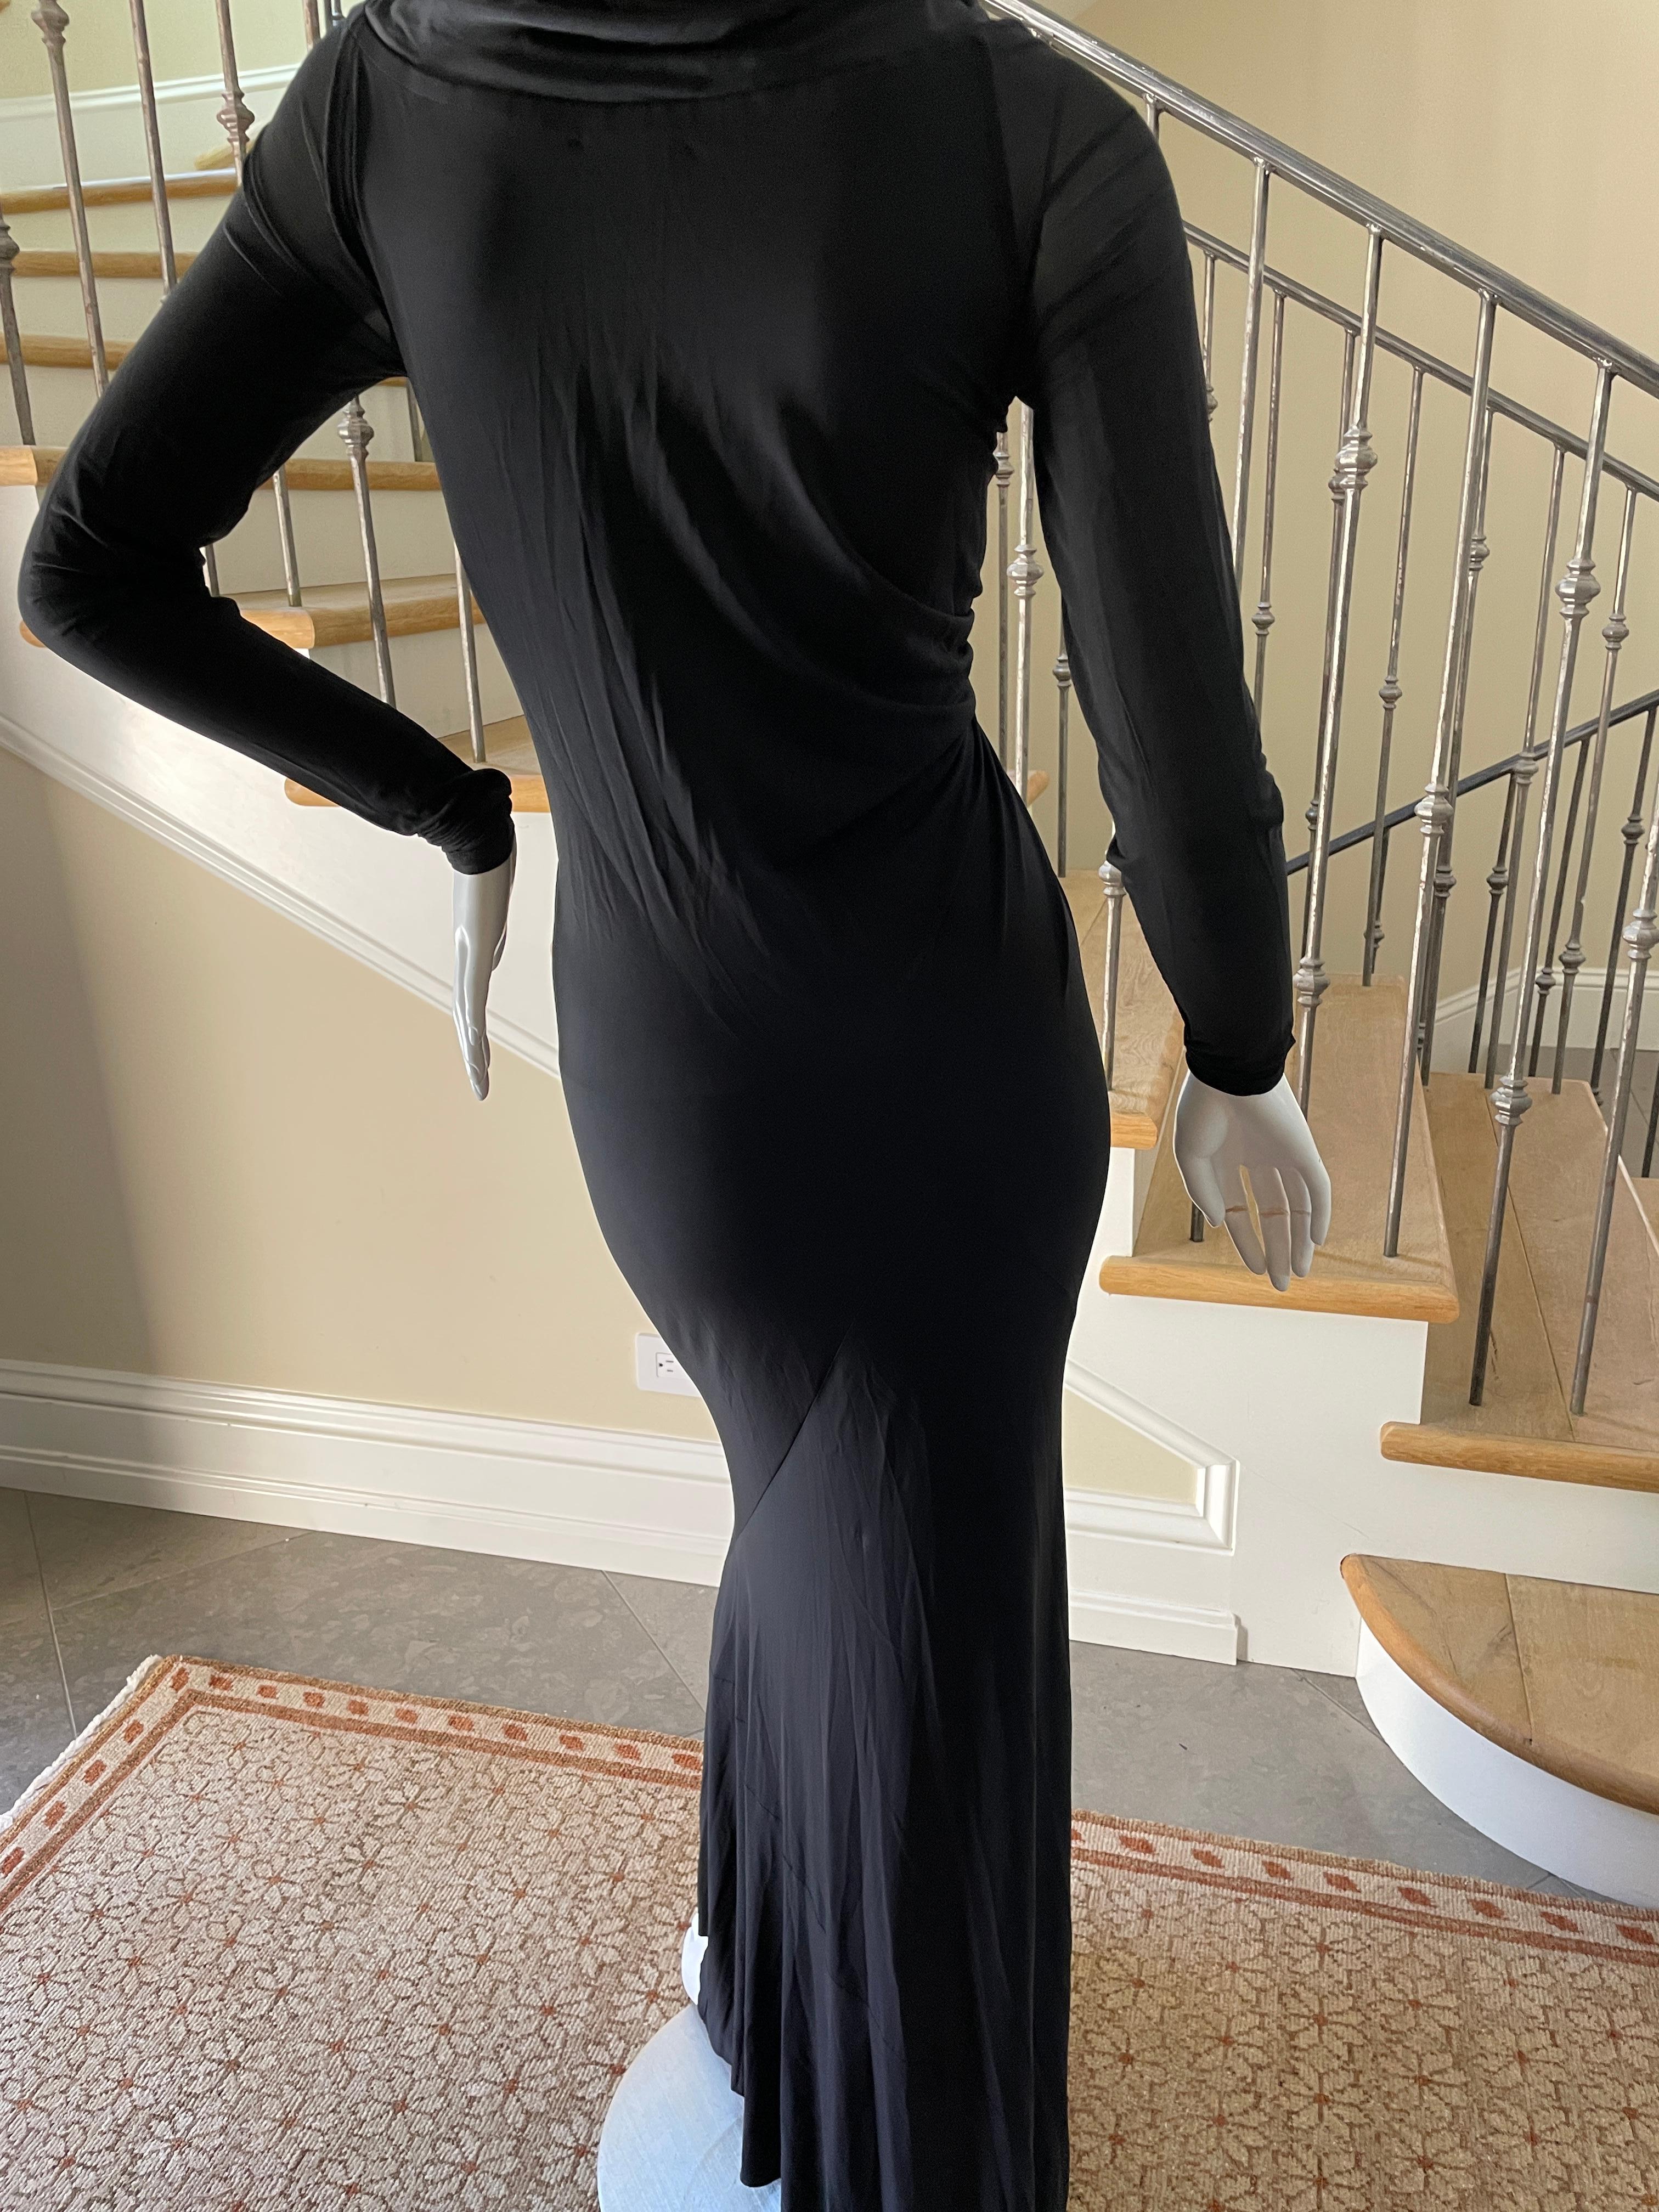 Donna Karan Vintage Black Dress w Plunging Neckline & Robert Lee Morris Ornament For Sale 4